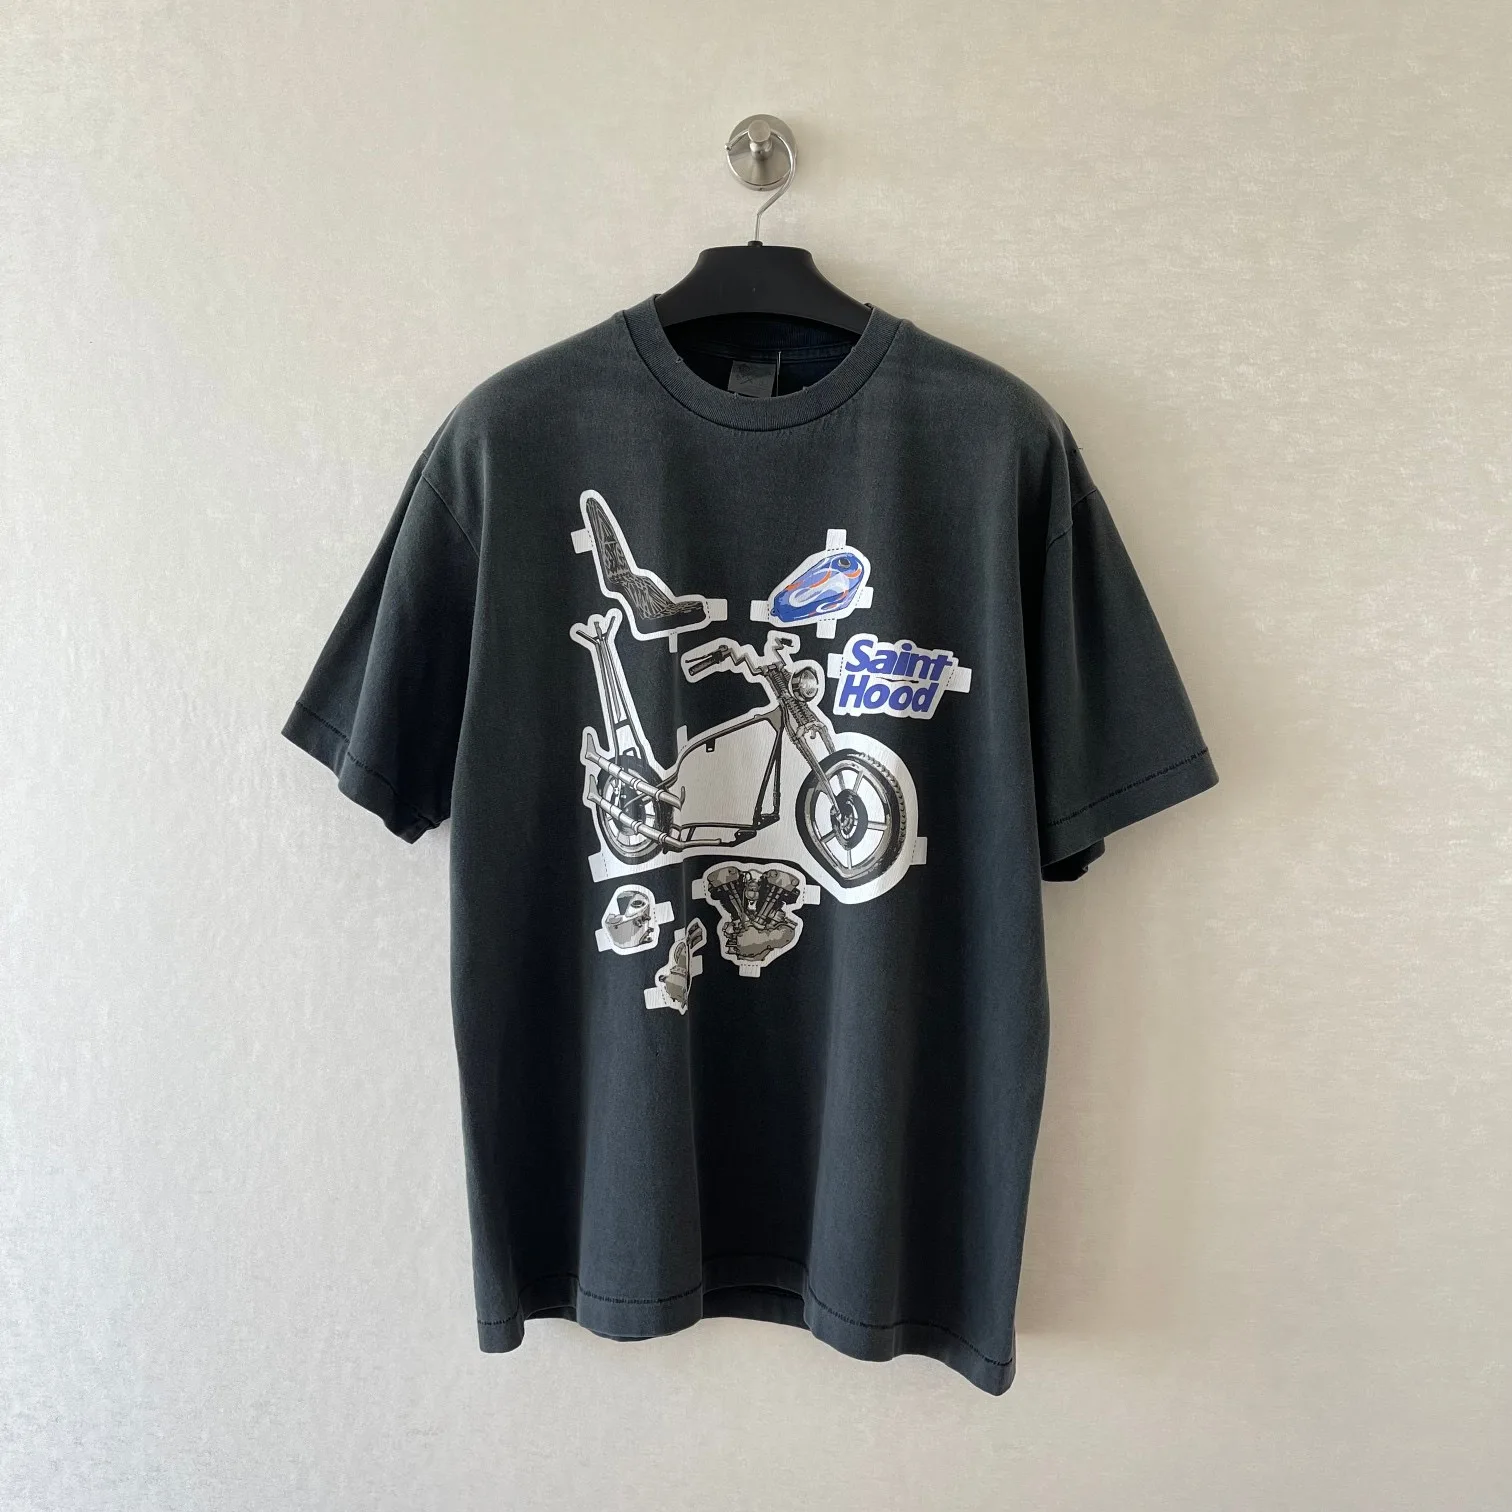 мужская спортивная футболка с короткими рукавами и винтажными потертыми мото-принтами saint hood